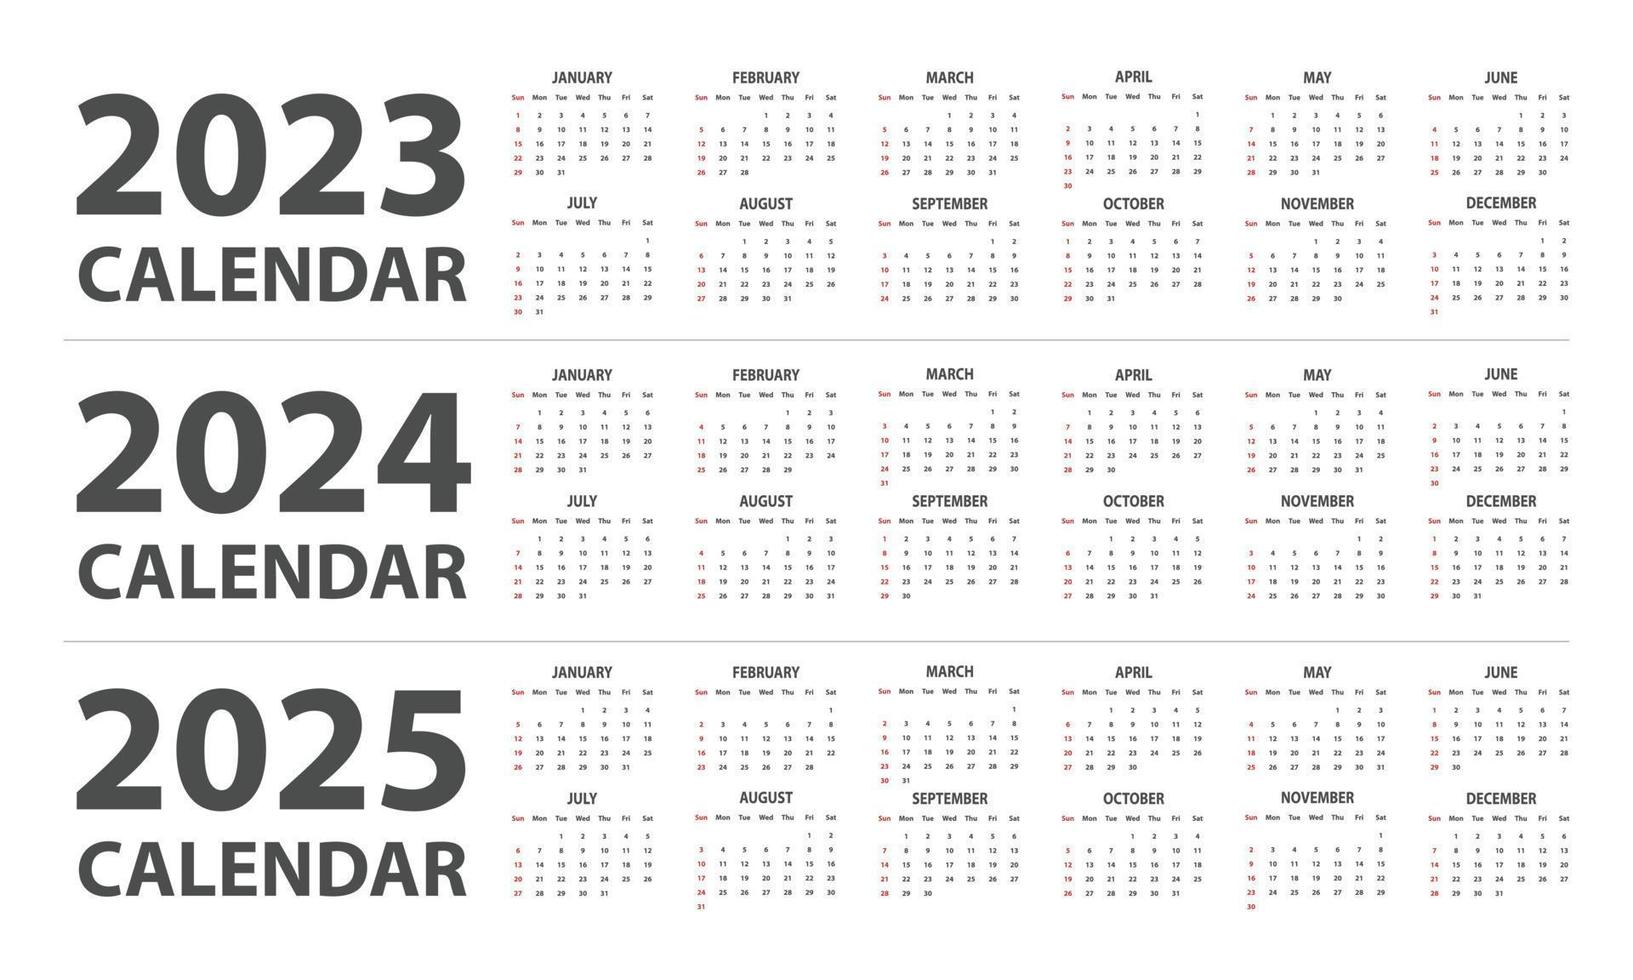 Ilustración de vector de calendario 2023, 2024, 2025. calendario mensual clásico simple para los años 2023, 2024, 2025. la semana comienza el domingo. plantilla de planificador de calendario minimalista año 2023 y 2024 y 2025